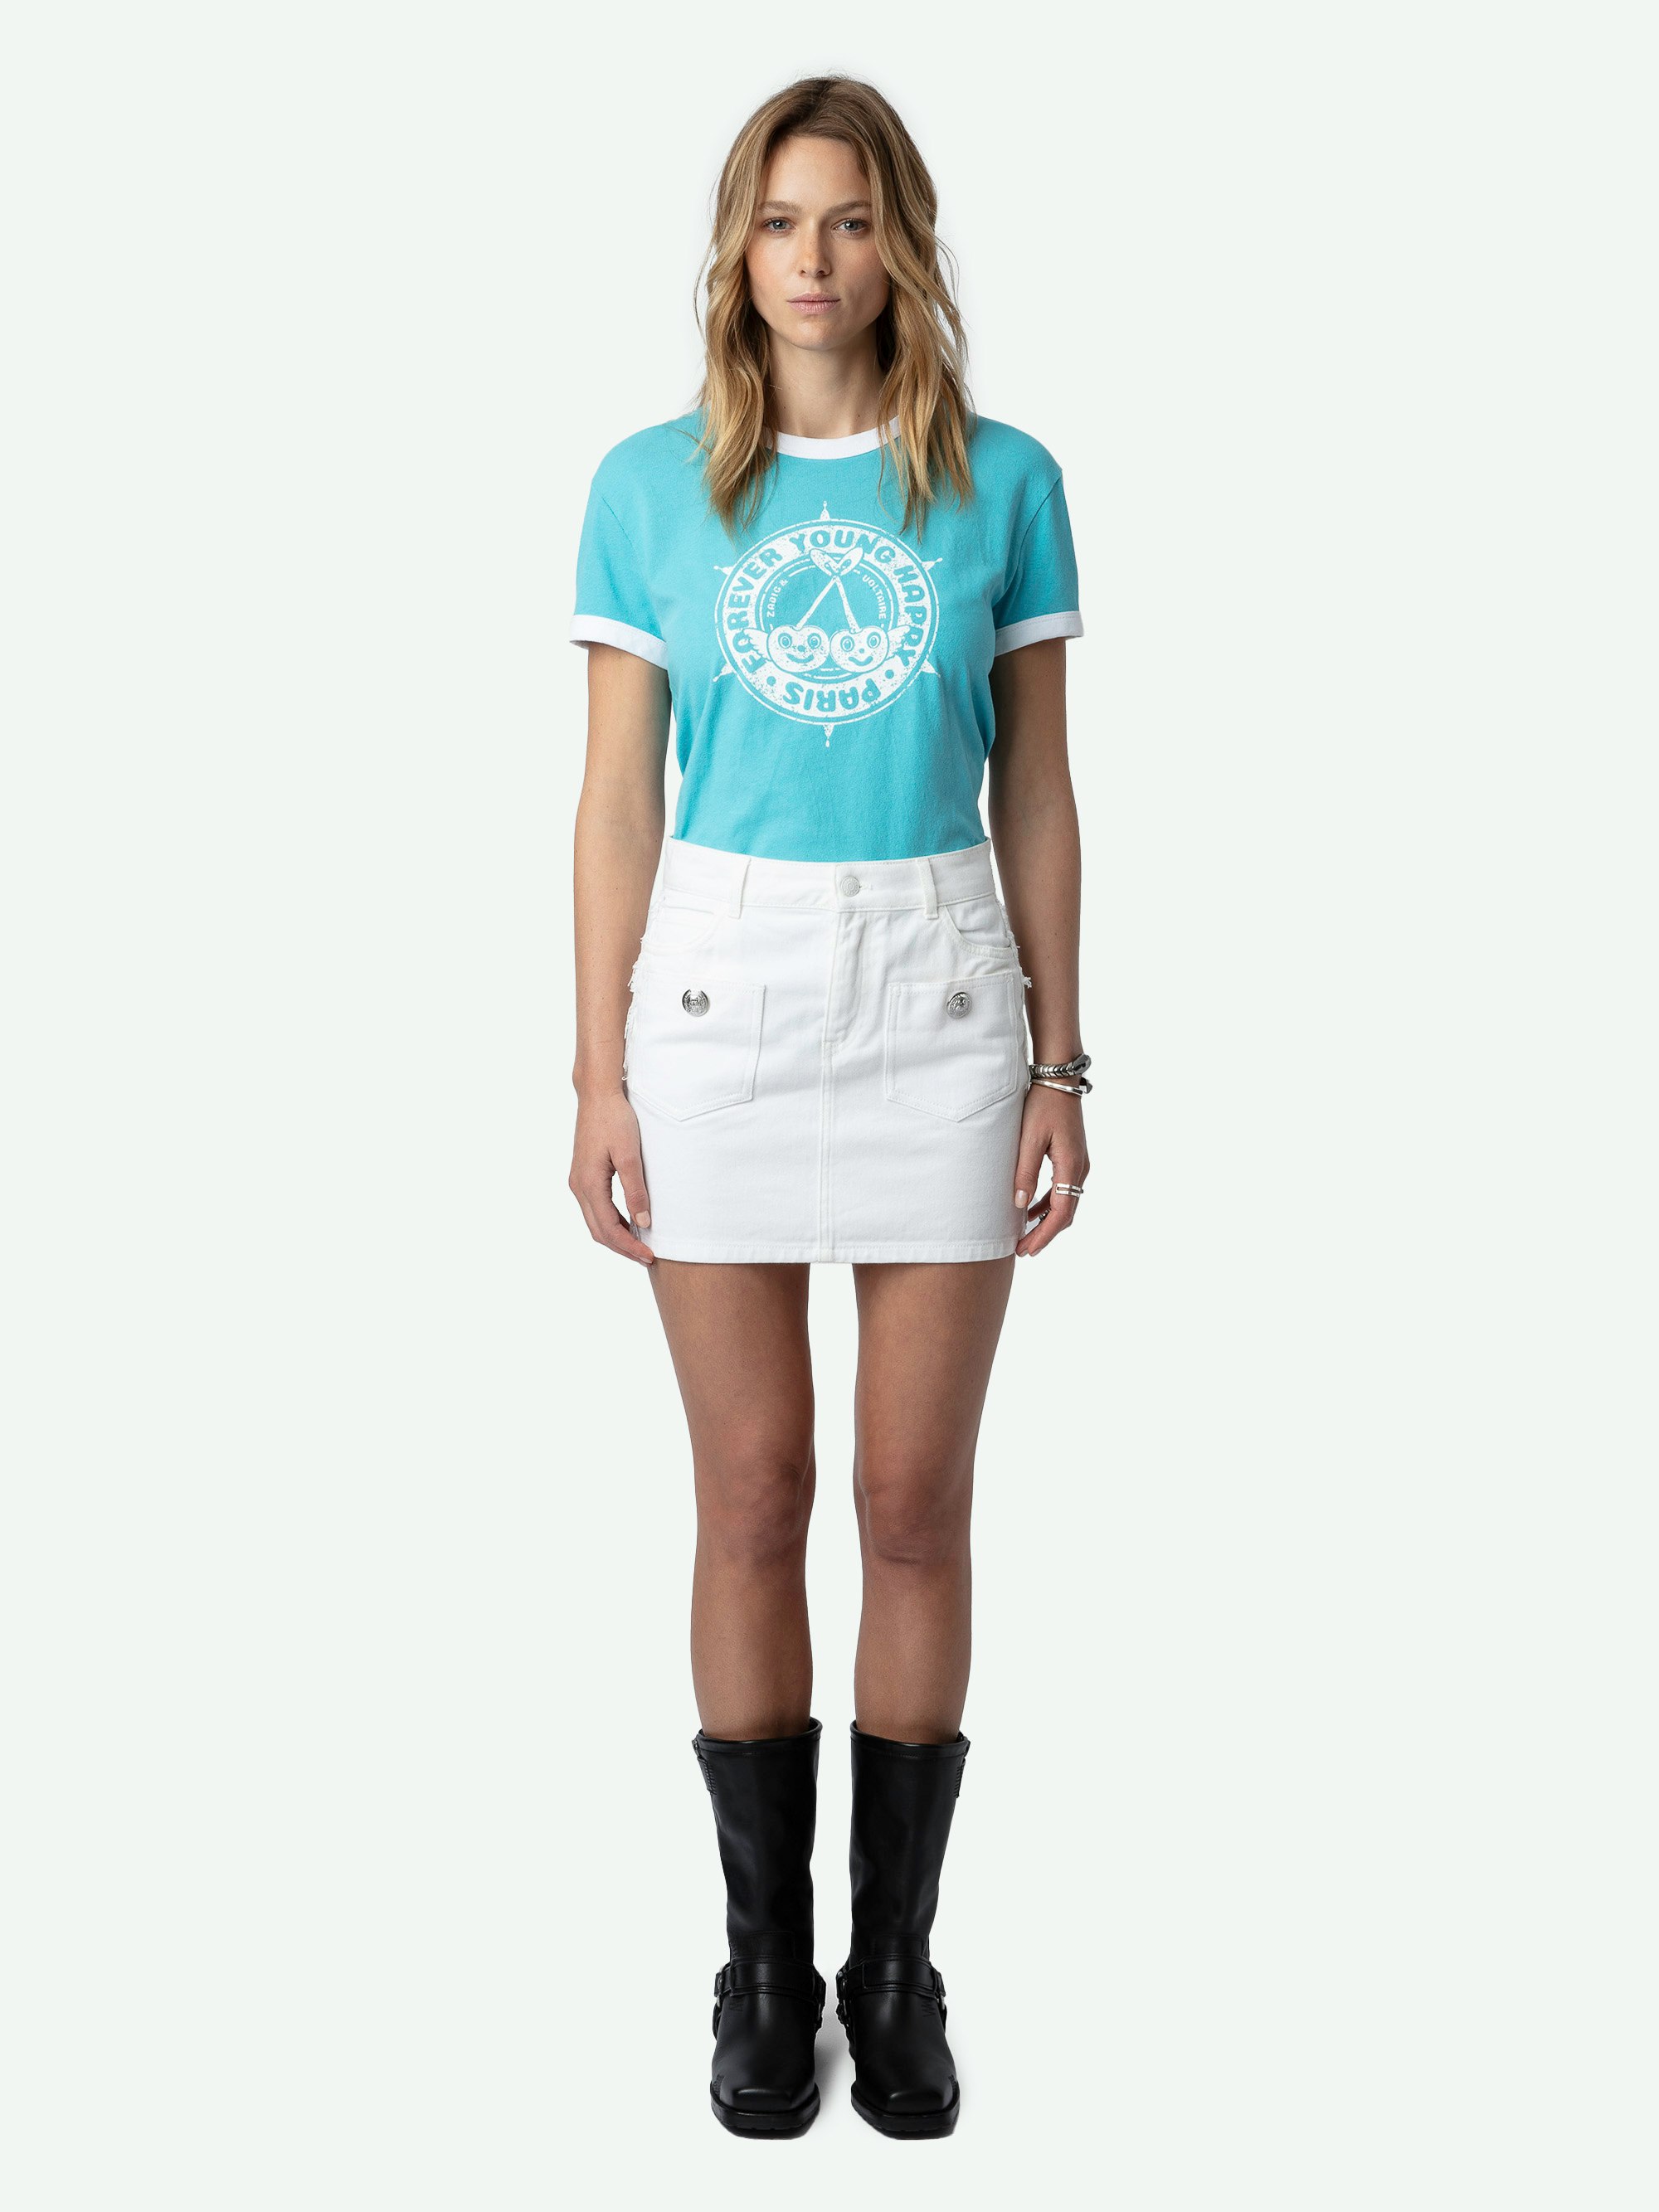 T-shirt Walk Blason - T-shirt en coton biologique bleu à manches courtes et imprimés blason et cerises à l'avant.